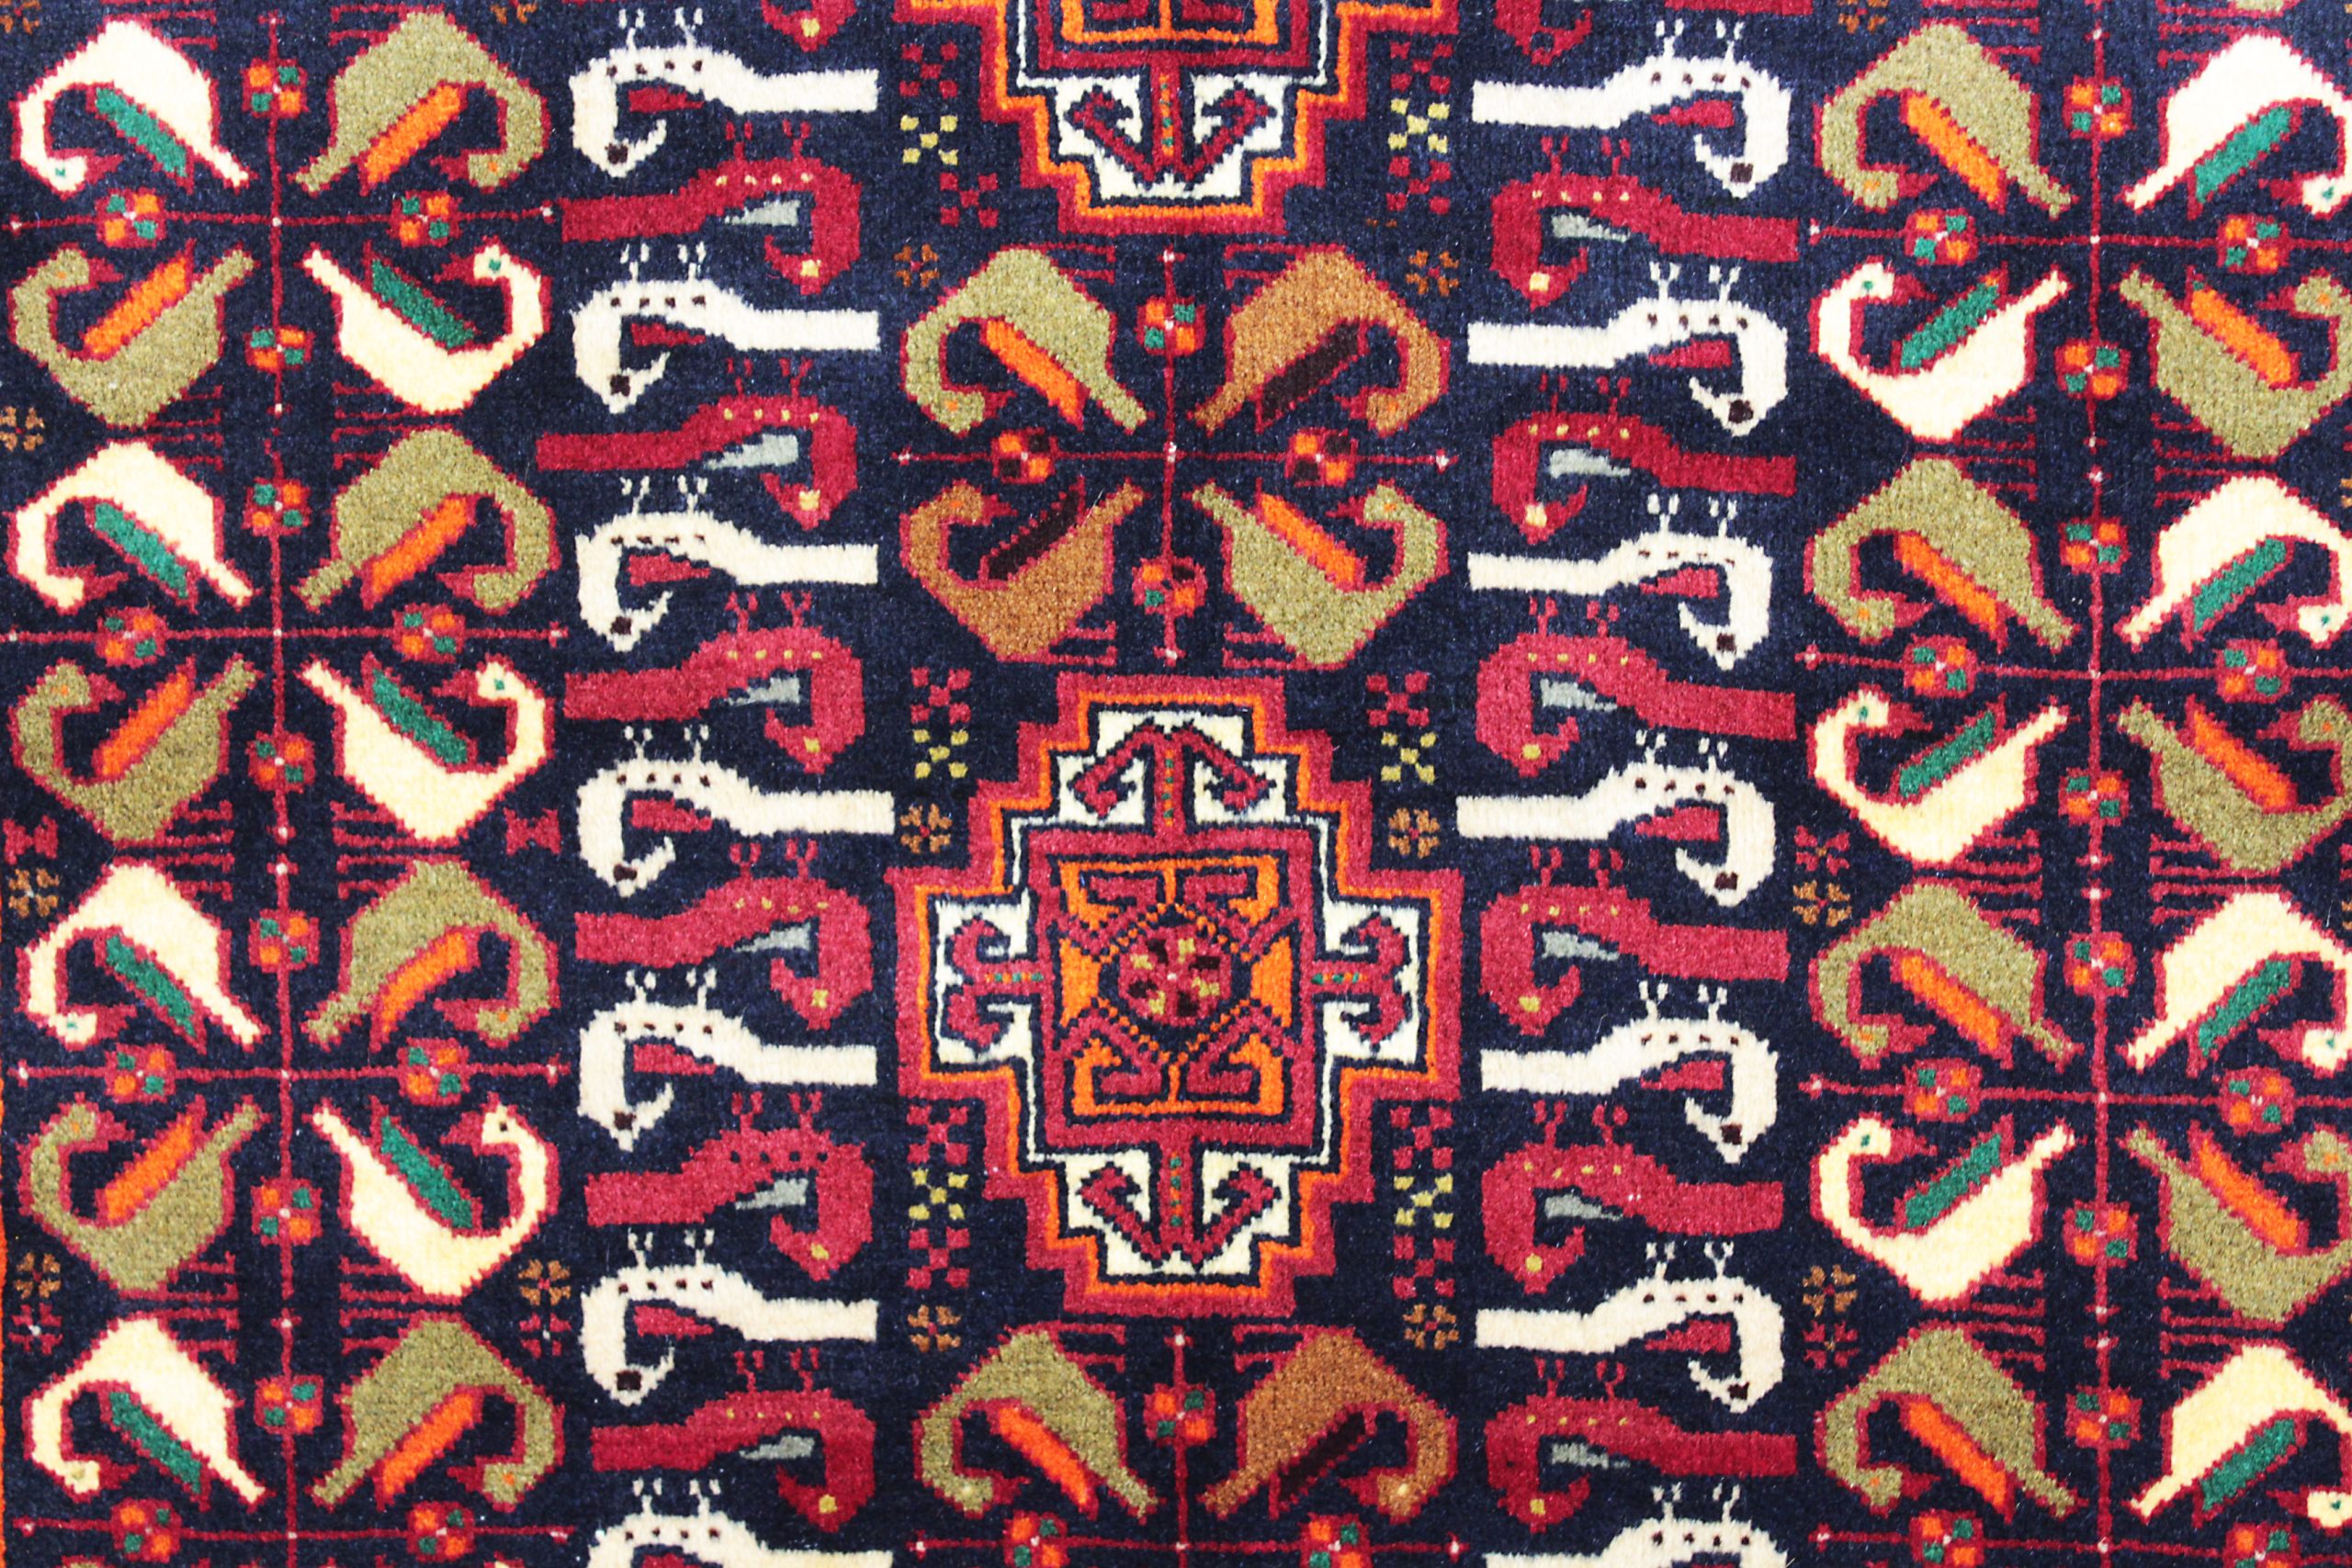 WZDS-55　バルーチ産ペルシャ絨毯　185×100